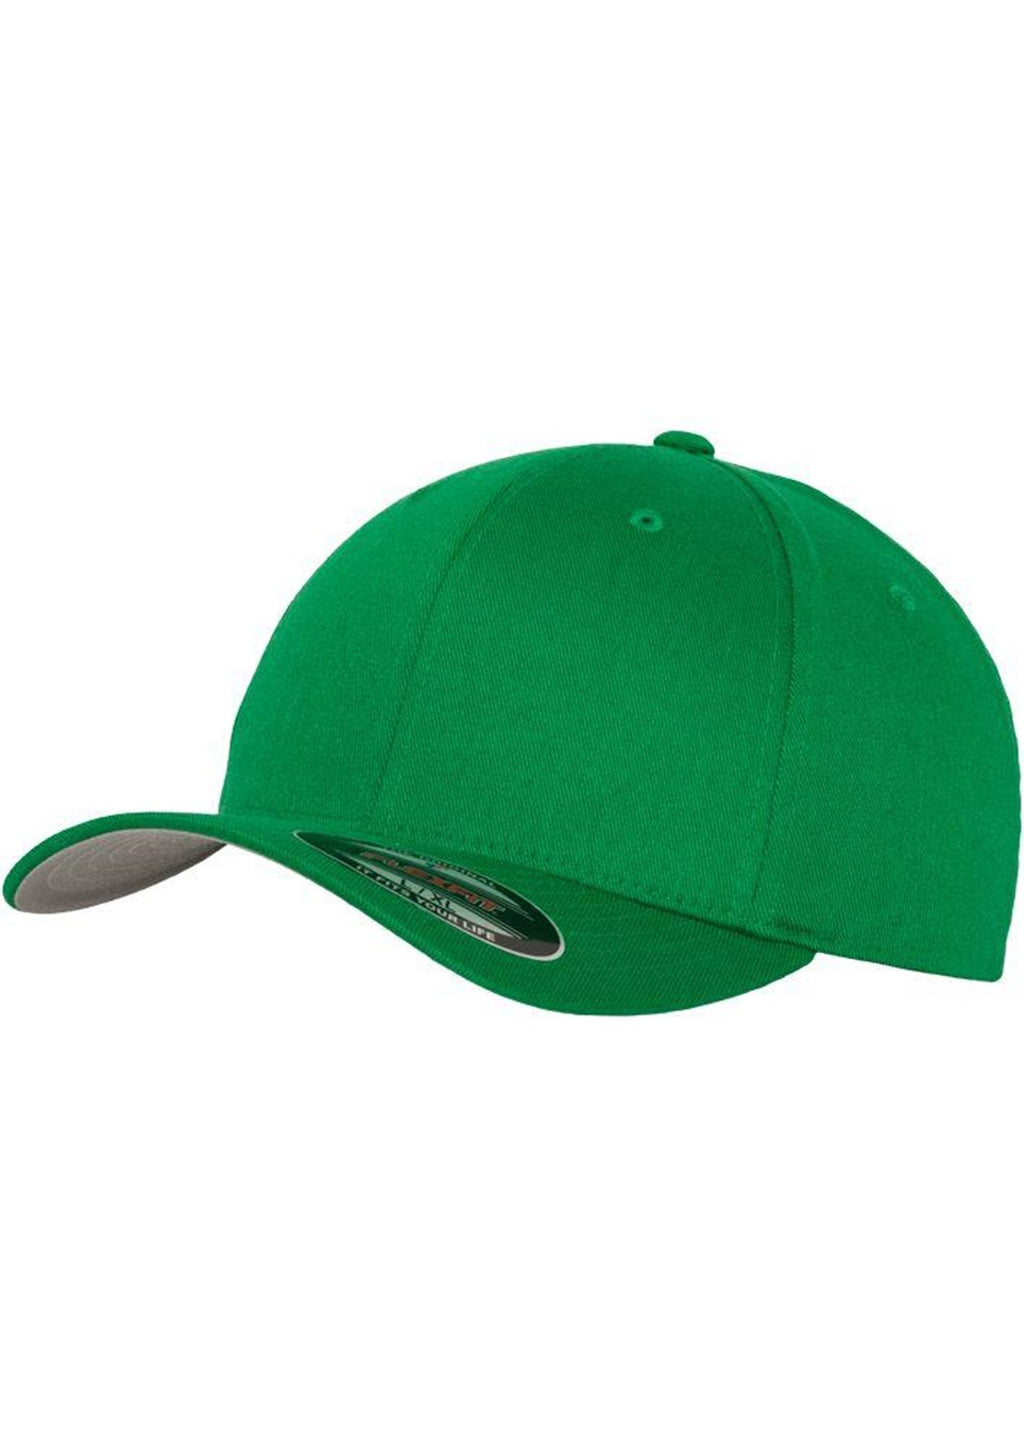 Flexfit originalna bejzbol kapica - zelena